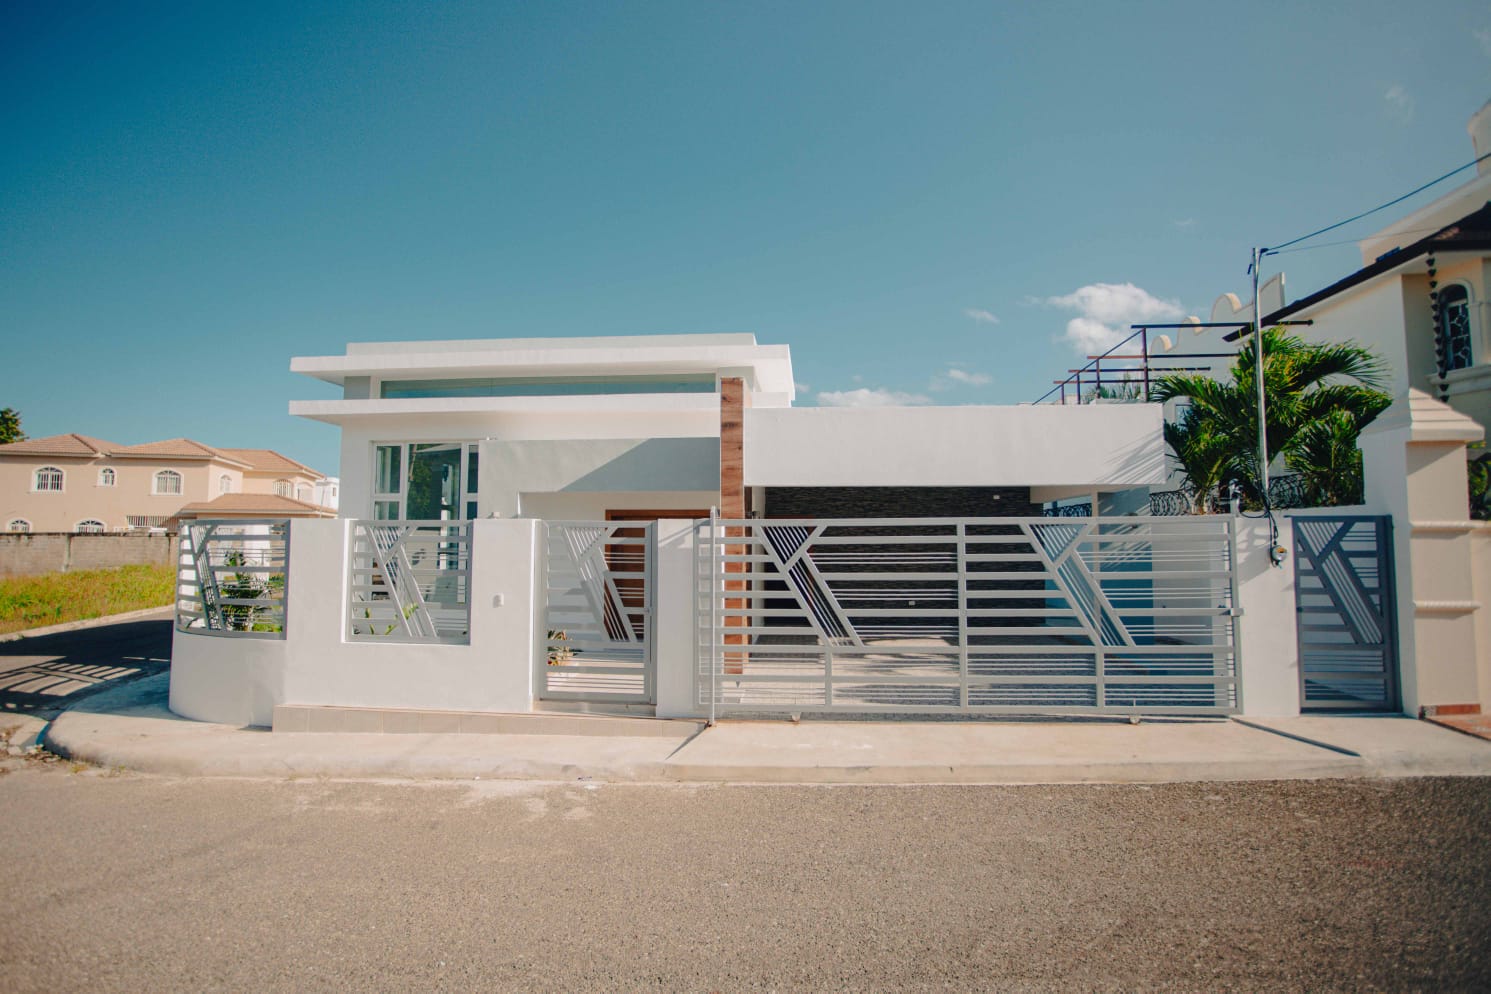 casa-de-venta-barata-nueva-recien-construida-con-3-habitaciones-puerto-plata-republica-dominicana